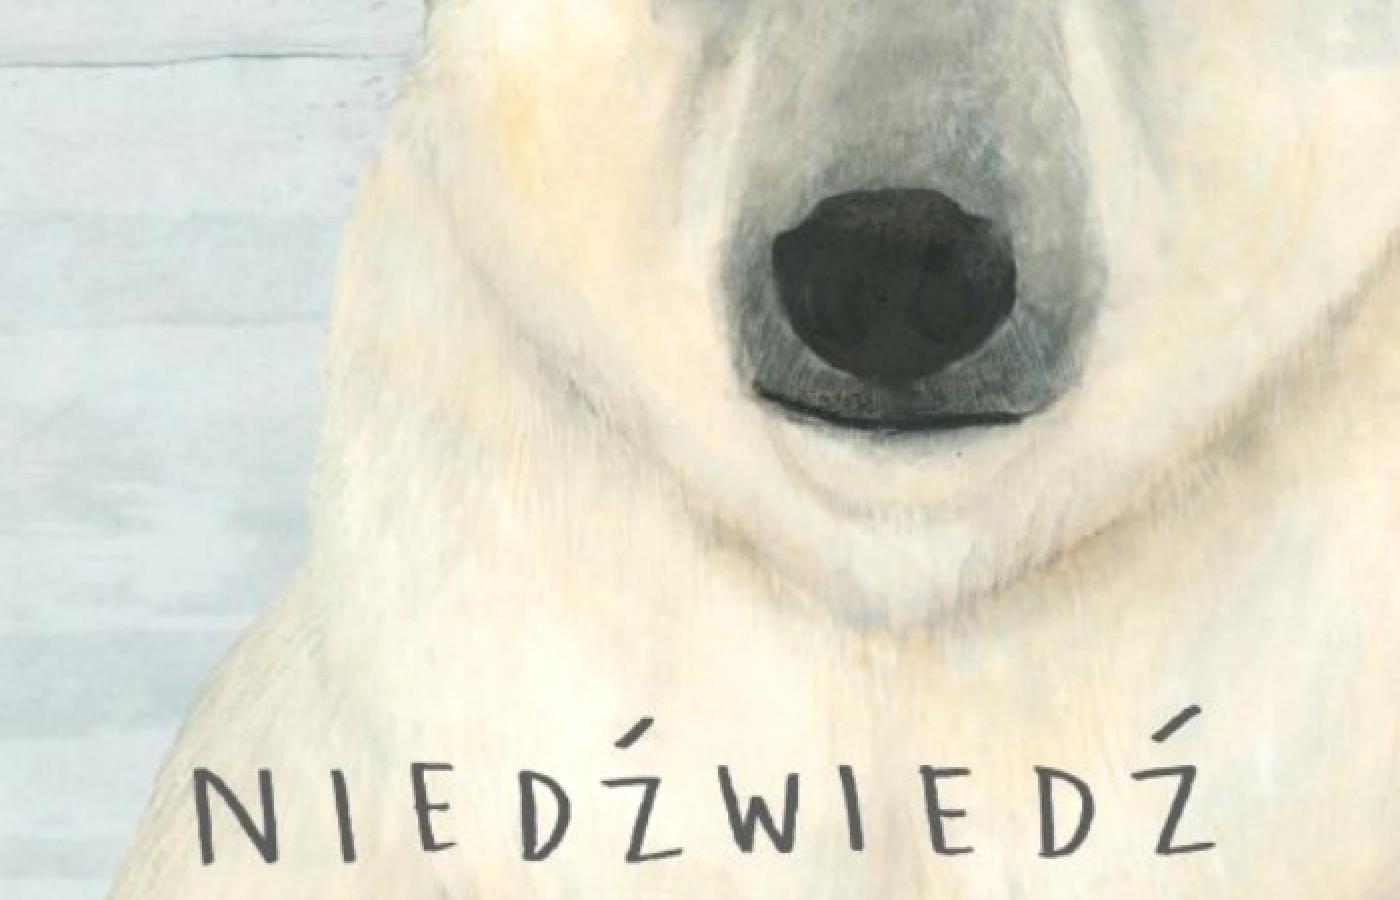 Jenni Desmond, <b>Niedźwiedź polarny</b>, Wydawnictwo Łajka, Sopot 2016. Niedźwiedź polarny to dziś jeden z najbardziej zagrożonych gatunków ssaków. Jenni Desmond postanowiła, że zrobi książkę, która pokaże, jak wyjątkowy jest ten mieszkaniec śnieżnych pustkowi. Mamy tu ciekawy zabieg narracyjny, bowiem głównym bohaterem opowieści jest nie tylko tytułowy niedźwiedź, ale również dziewczynka, która czytając książkę o nim, trafia w sam środek opowieści. Sam koncept książki wydaje się ciekawy i nawet trochę poetycki. Wrażenie to potęgują nastrojowe ilustracje. Desmond bardzo zmysłowo kreśli zimowy krajobraz, podkreślając piękno wody i bezkresnego lodu. Gorzej niestety z tekstem. W zestawieniu z warstwą wizualną jest nazbyt  encyklopedyczny.